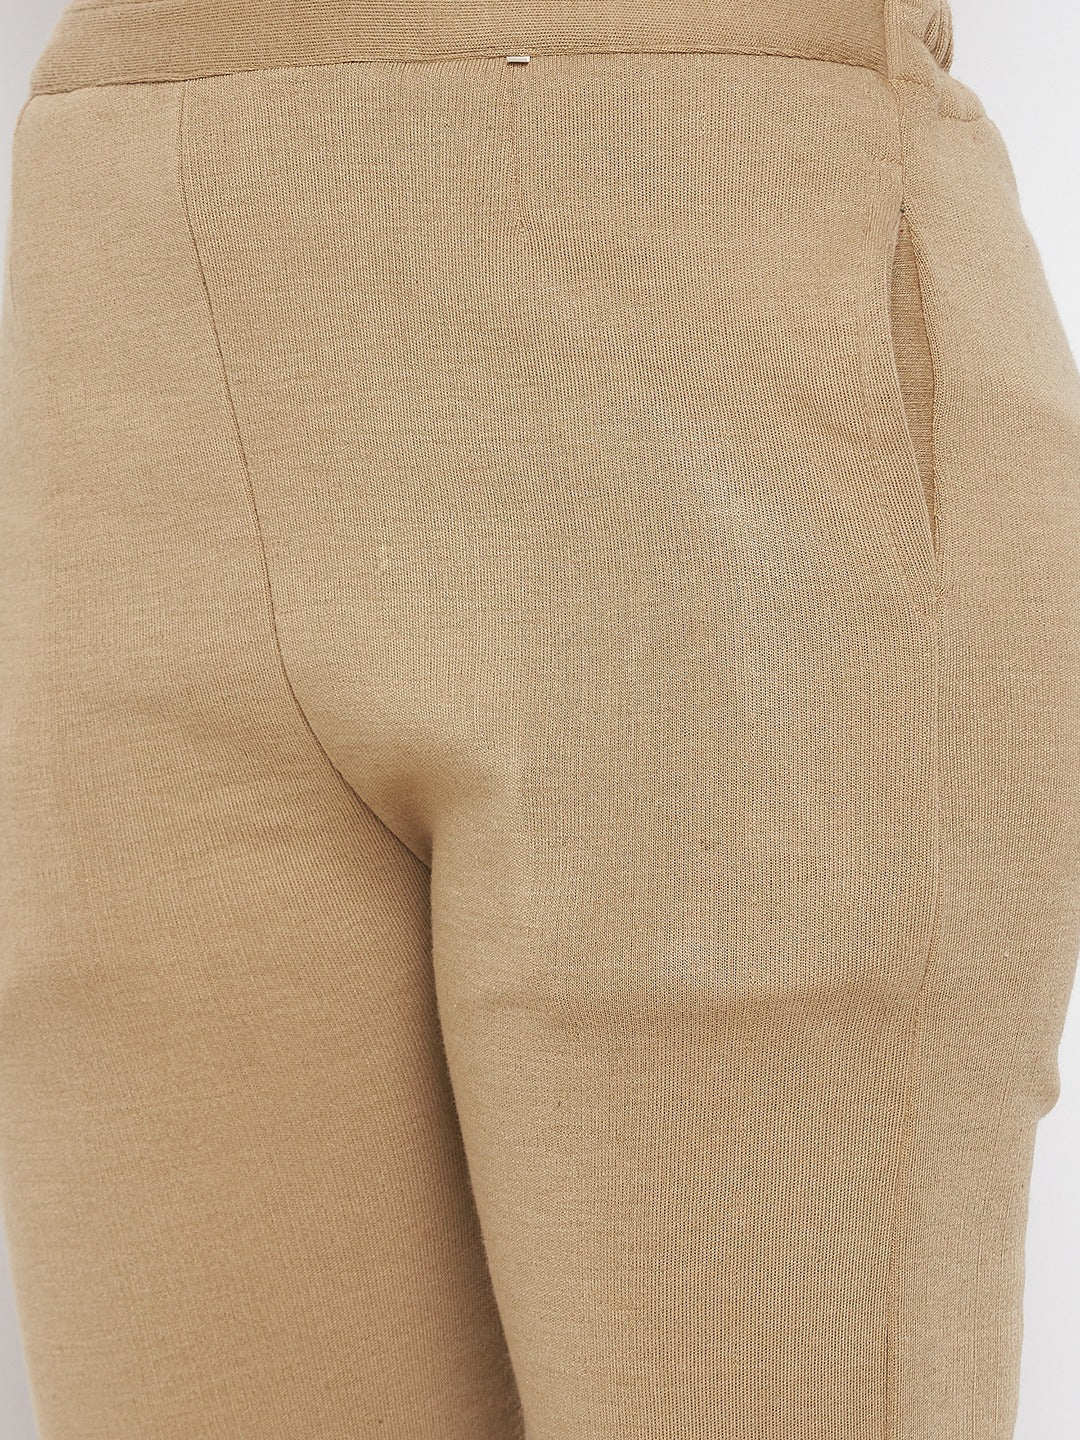 Clora Beige Solid Woolen Trouser